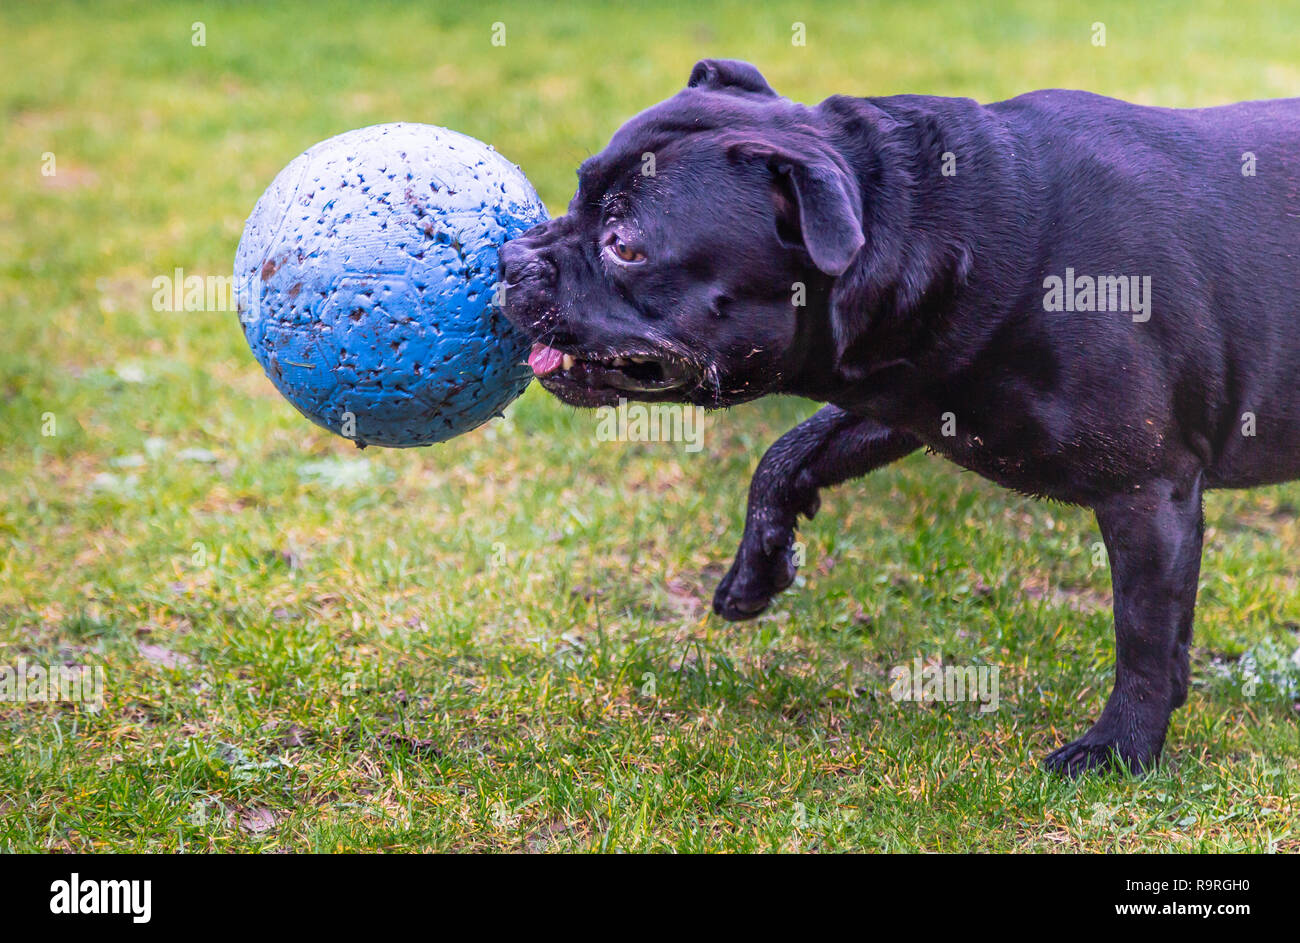 Staffordshire Bull Terrier chien courir et jouer sur l'herbe boueuse avec une grande boule bleue dans sa bouche Banque D'Images